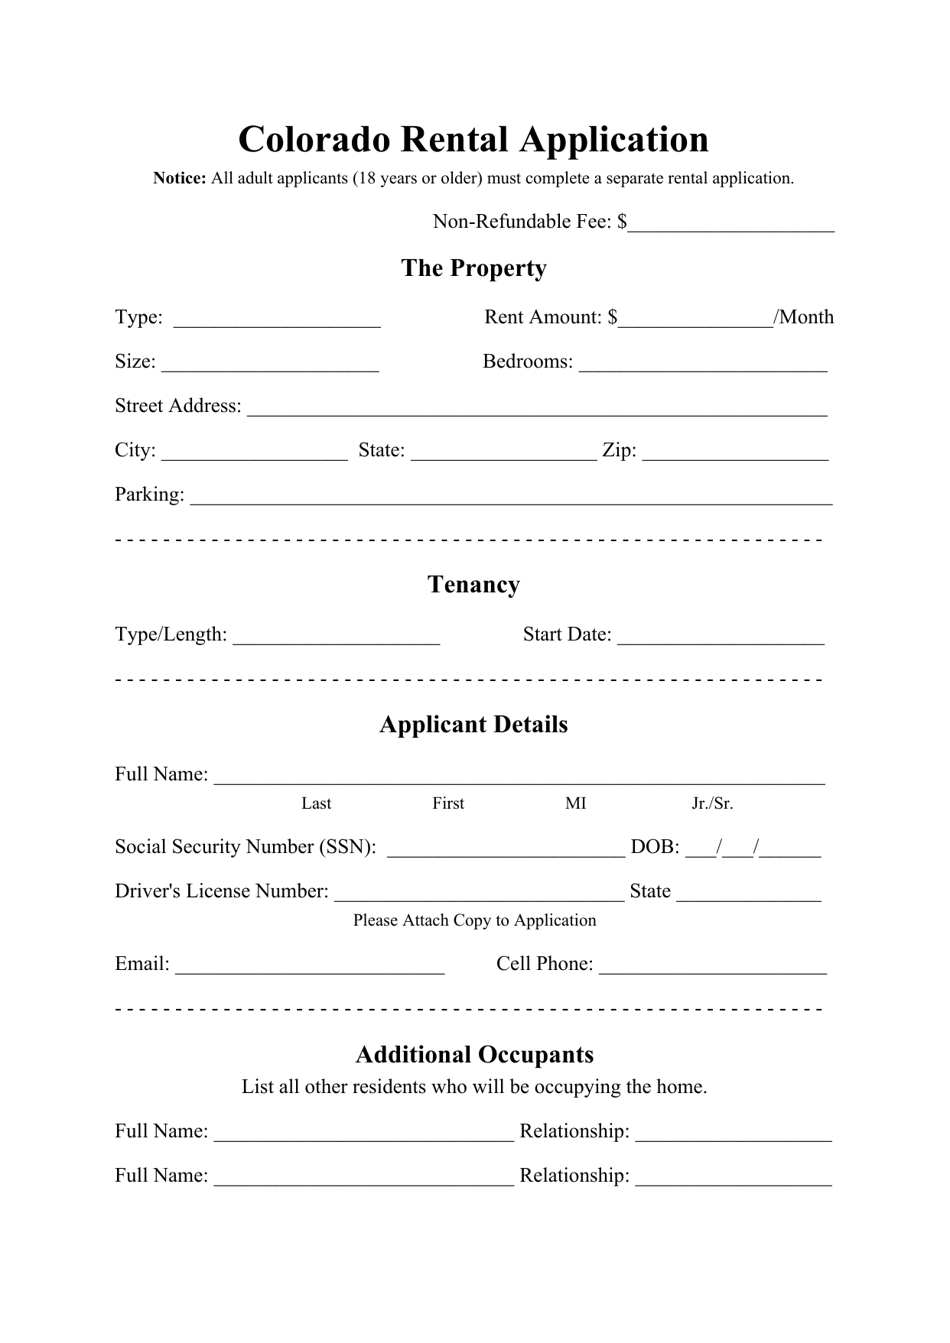 Rental Application Form - Colorado, Page 1